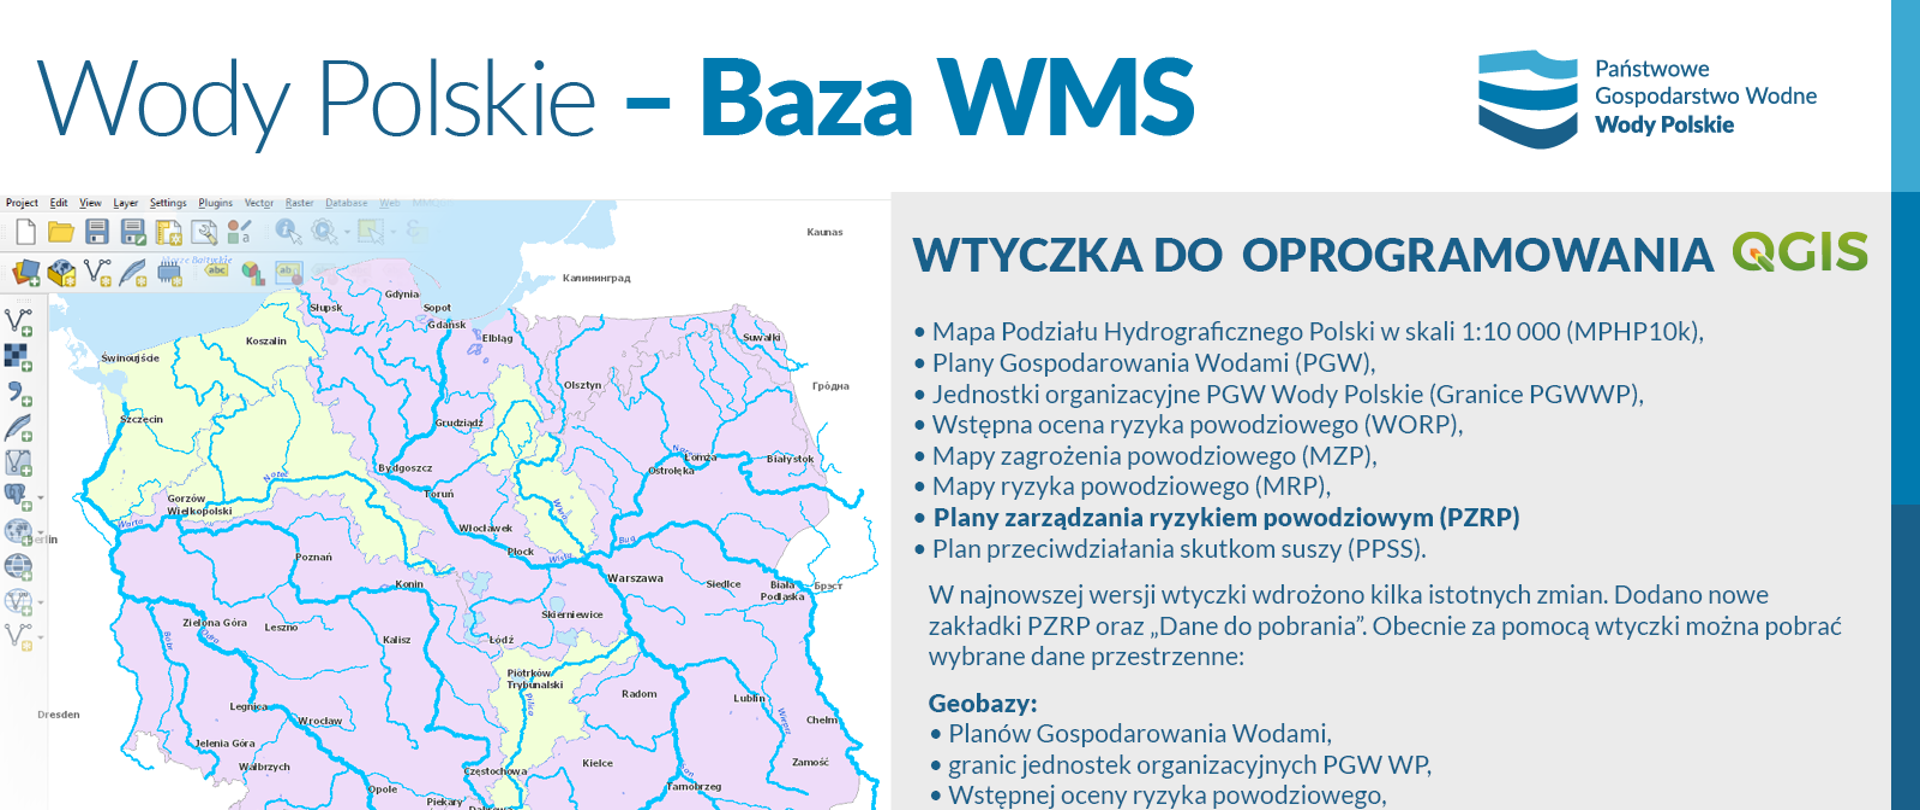 Wody Polskie - Baza WMS - infografika